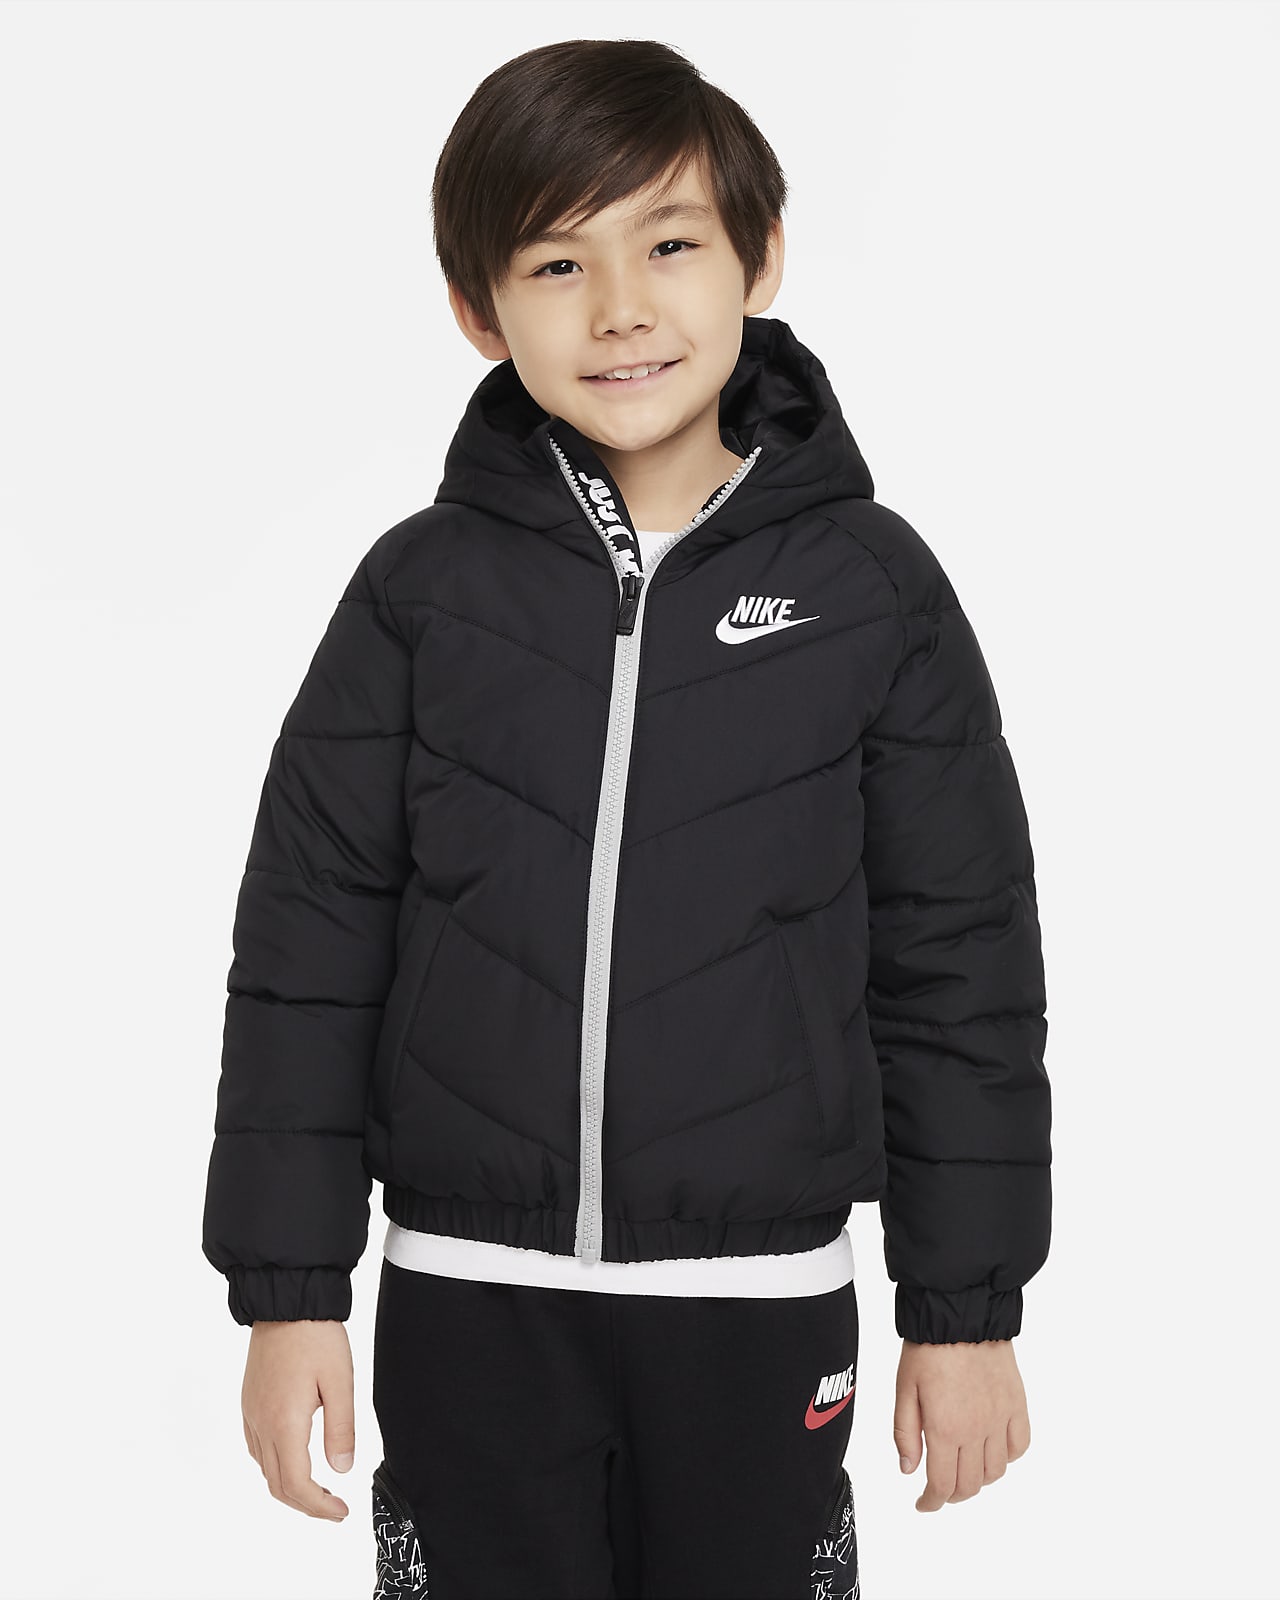 Péřová bunda Nike s ševronovým vzorem a kapucí pro malé děti